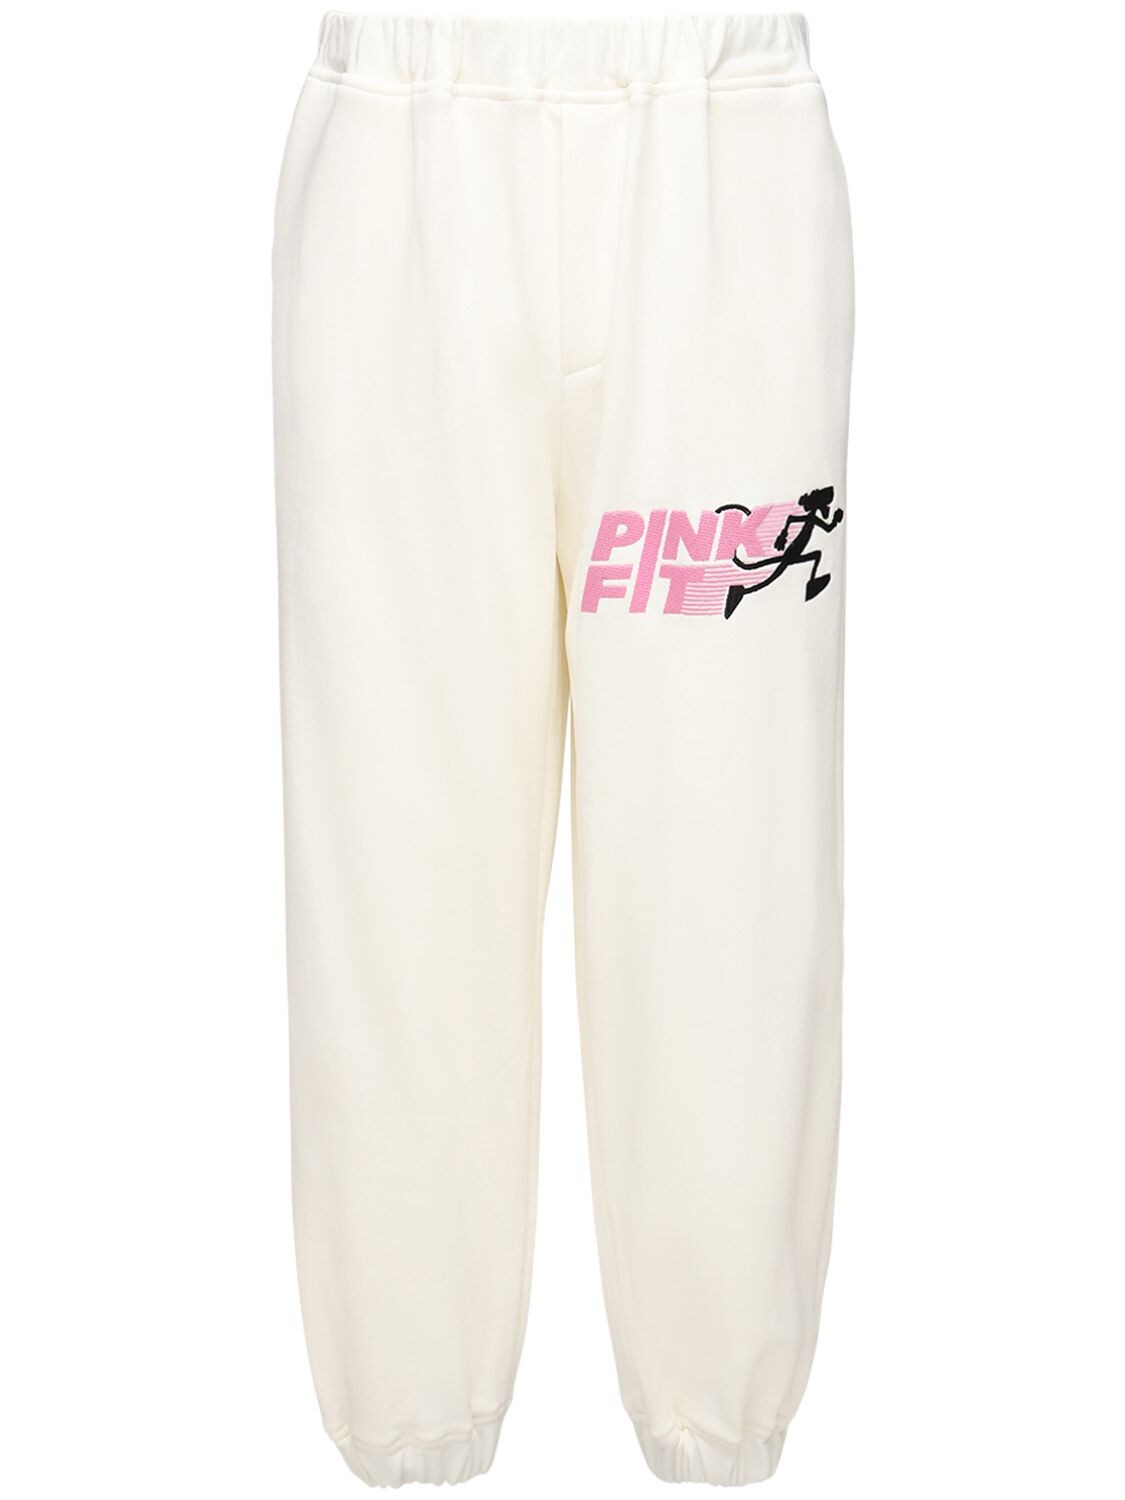 Pink Fit Cotton Sweatpants